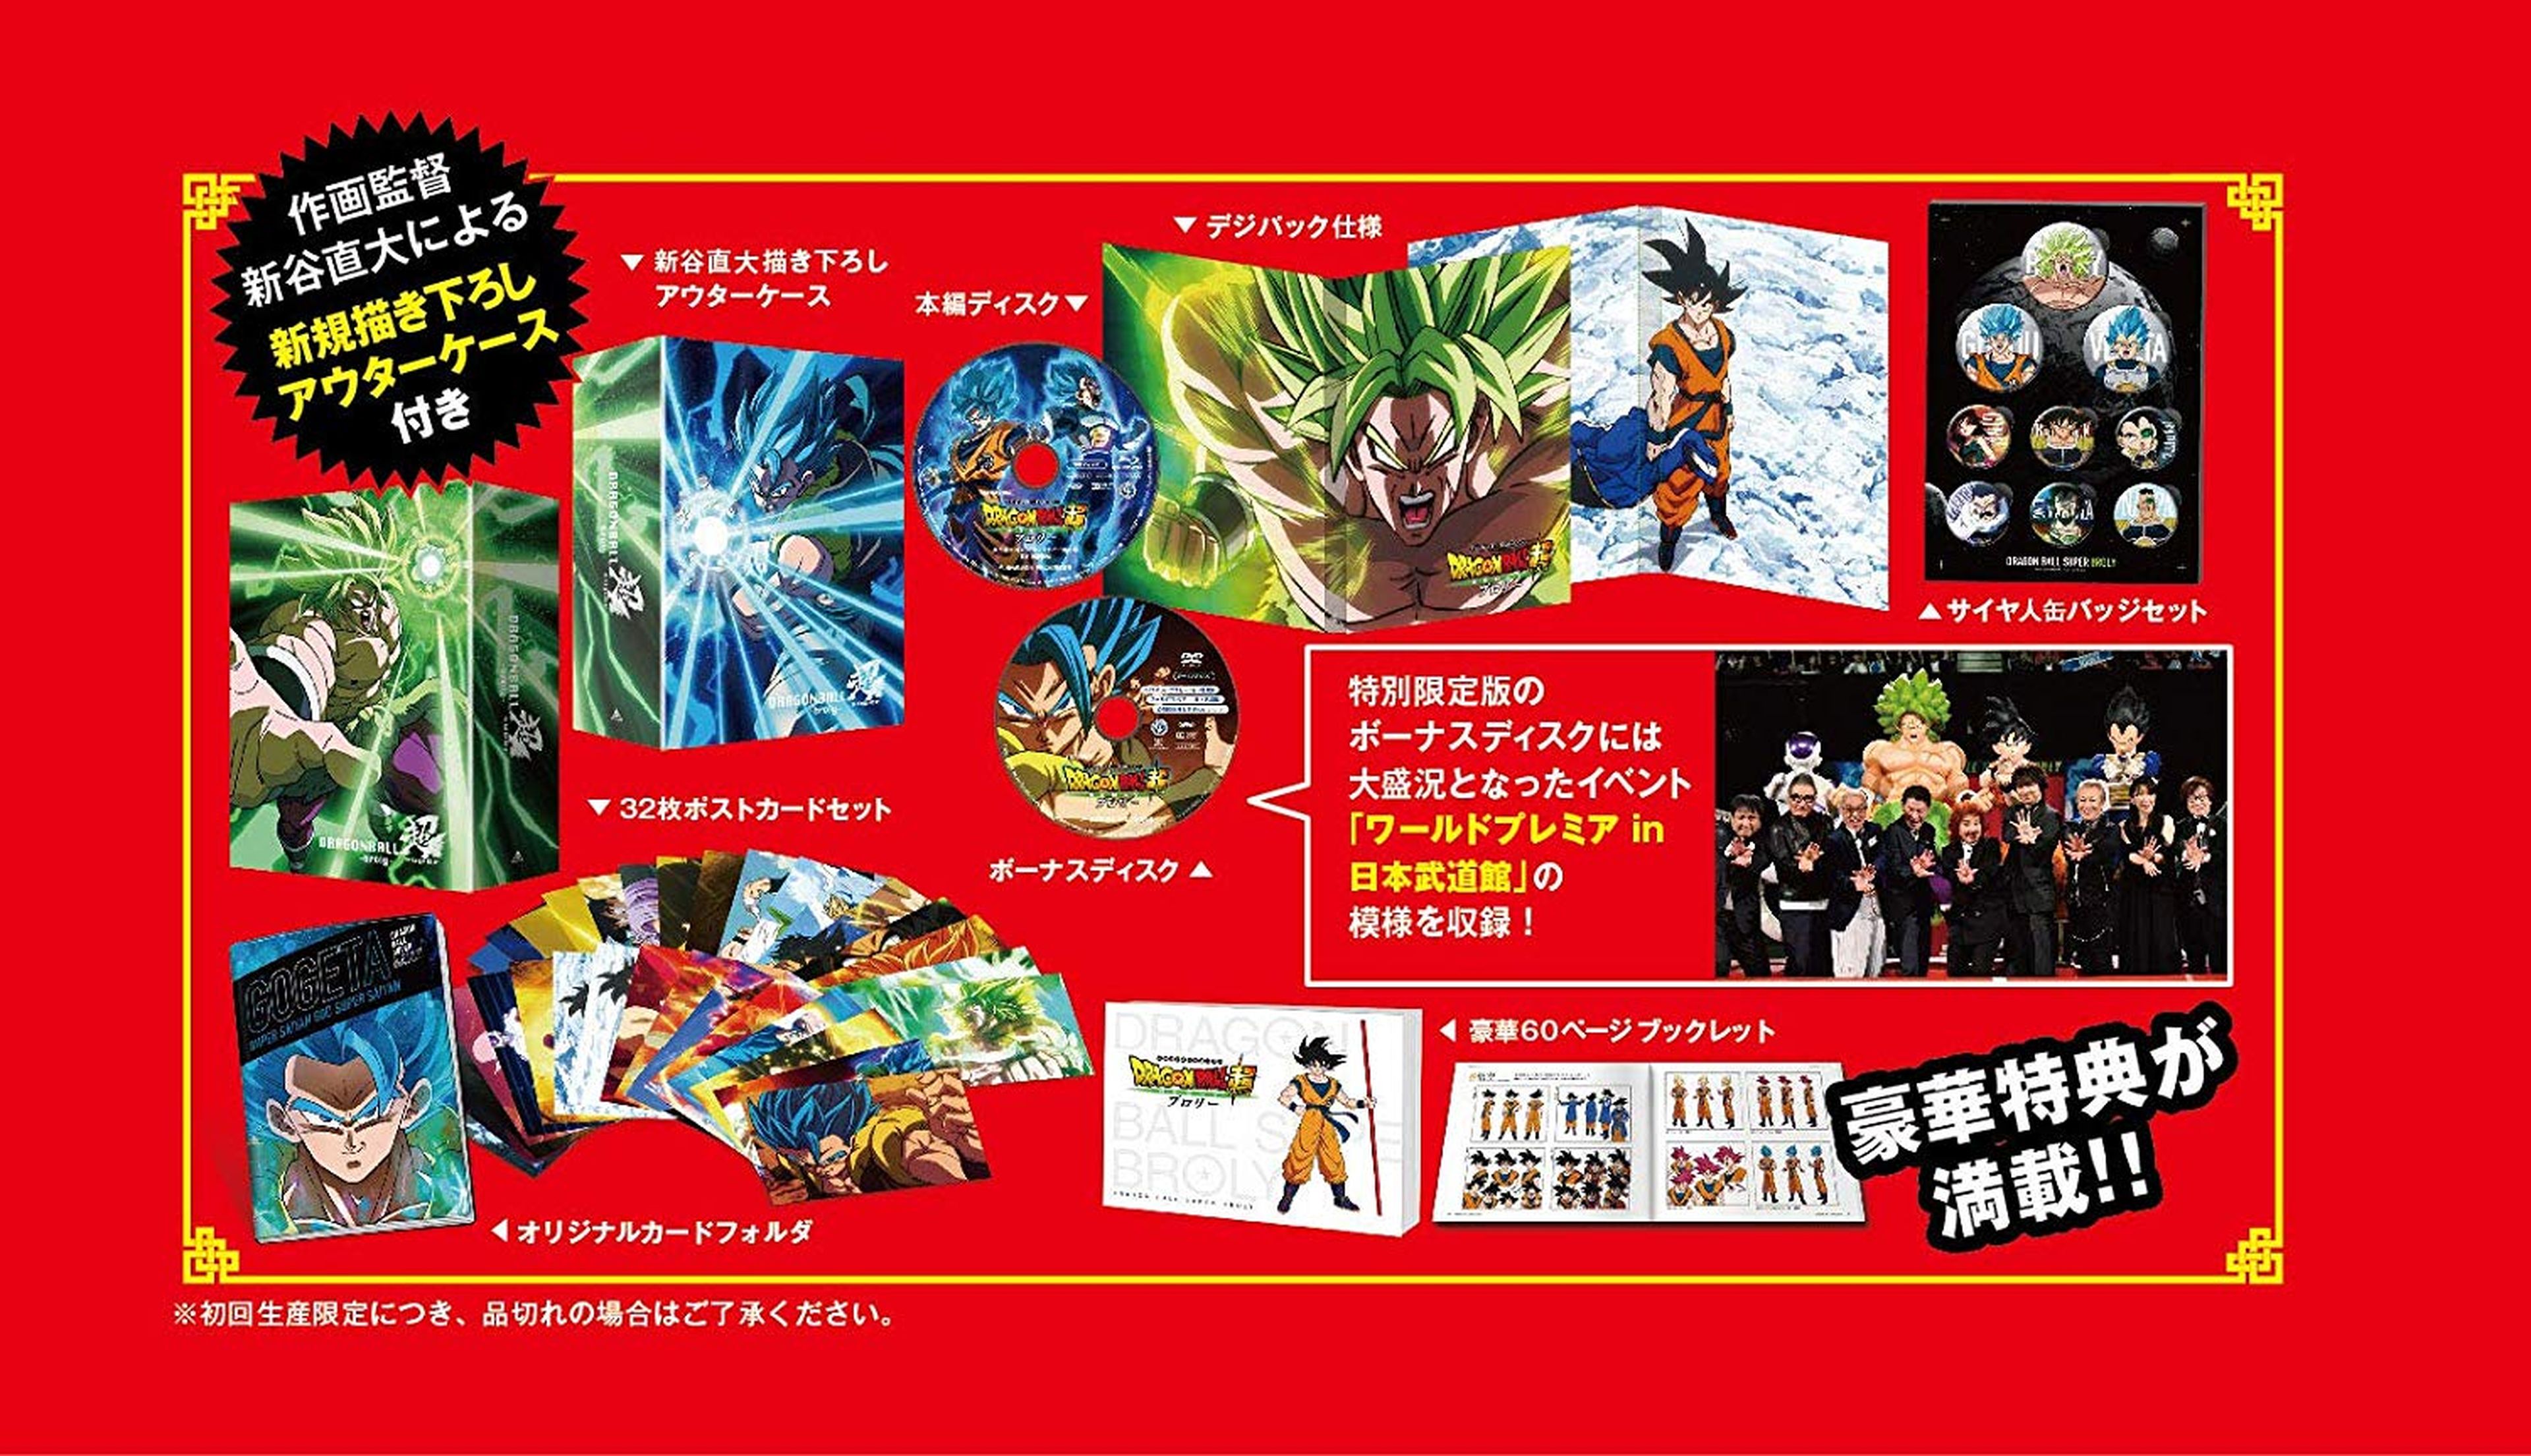 Dragon Ball Super Broly - España tendrá la mejor edición coleccionista del mundo gracias a Selecta Visión